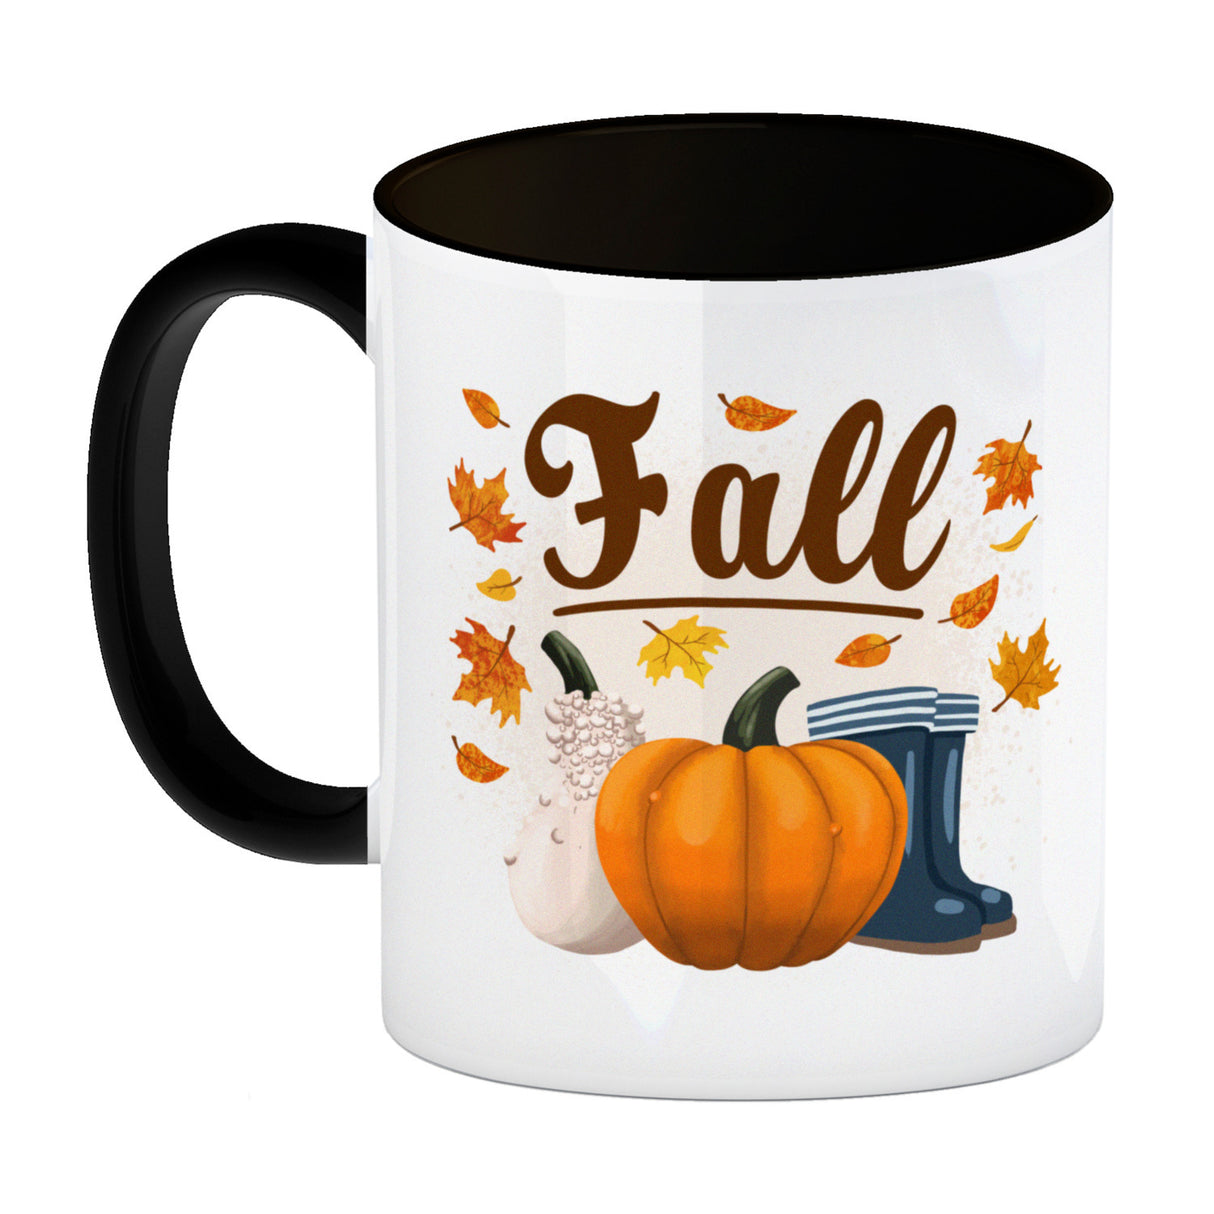 Fall Jahreszeit Herbst Kaffeebecher mit Kürbis und Laub